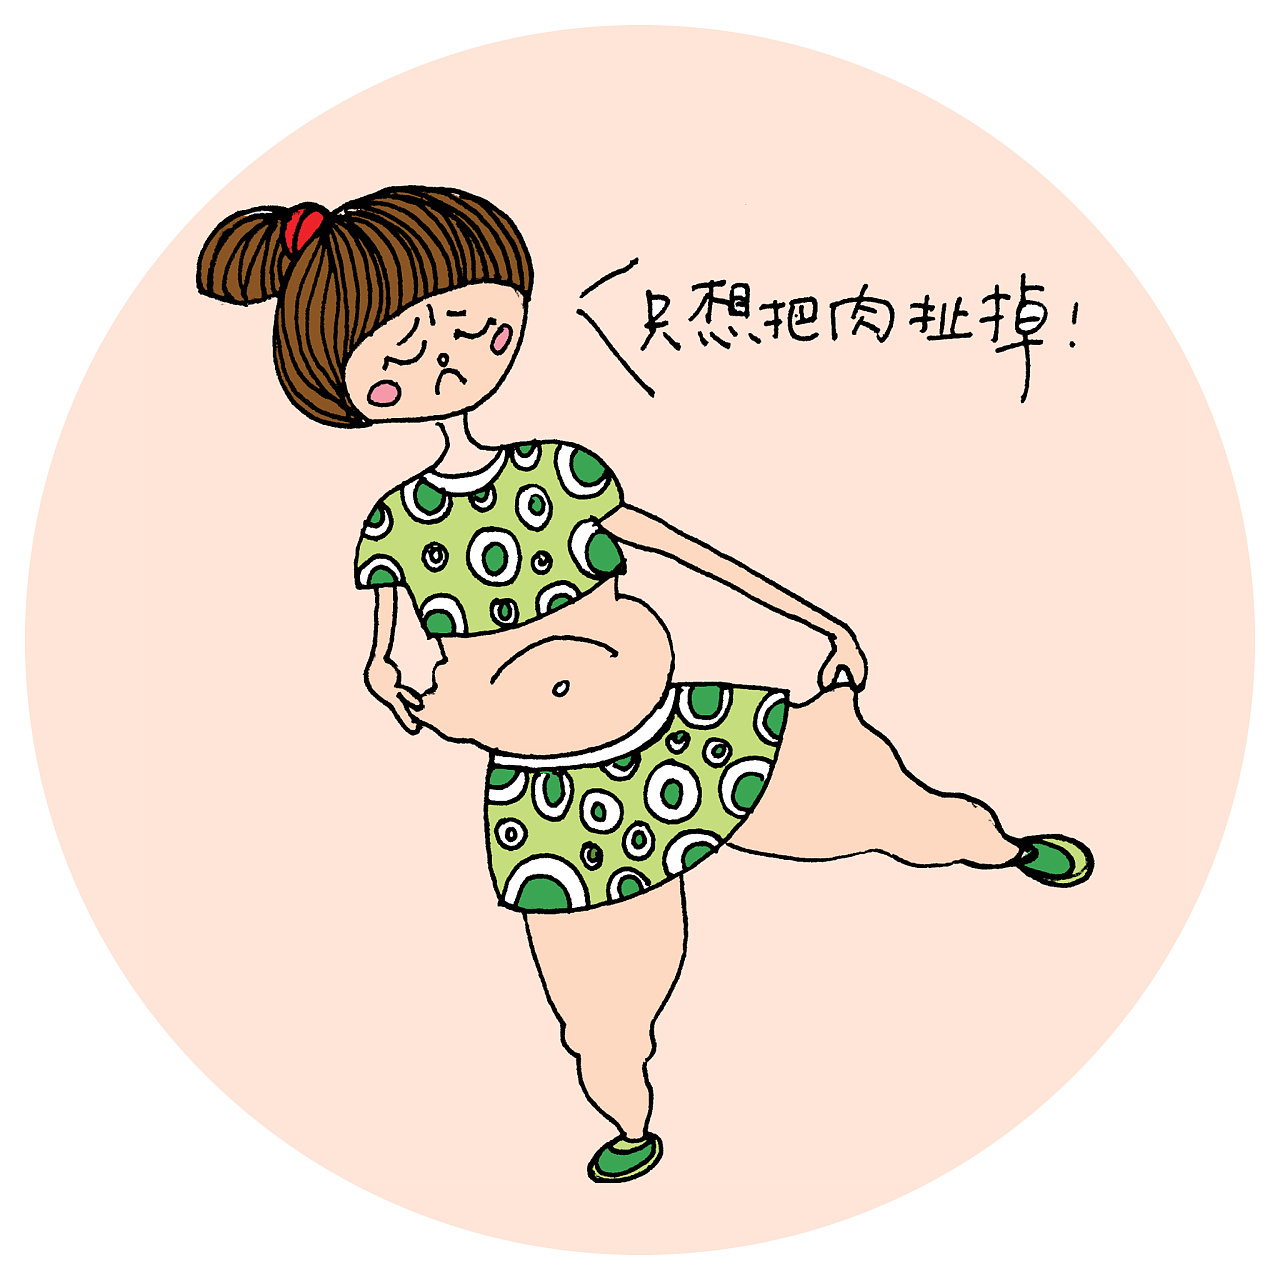 卡通胖女孩可愛表情包PSD圖案素材免費下載，圖片尺寸1024 × 1024px - Lovepik